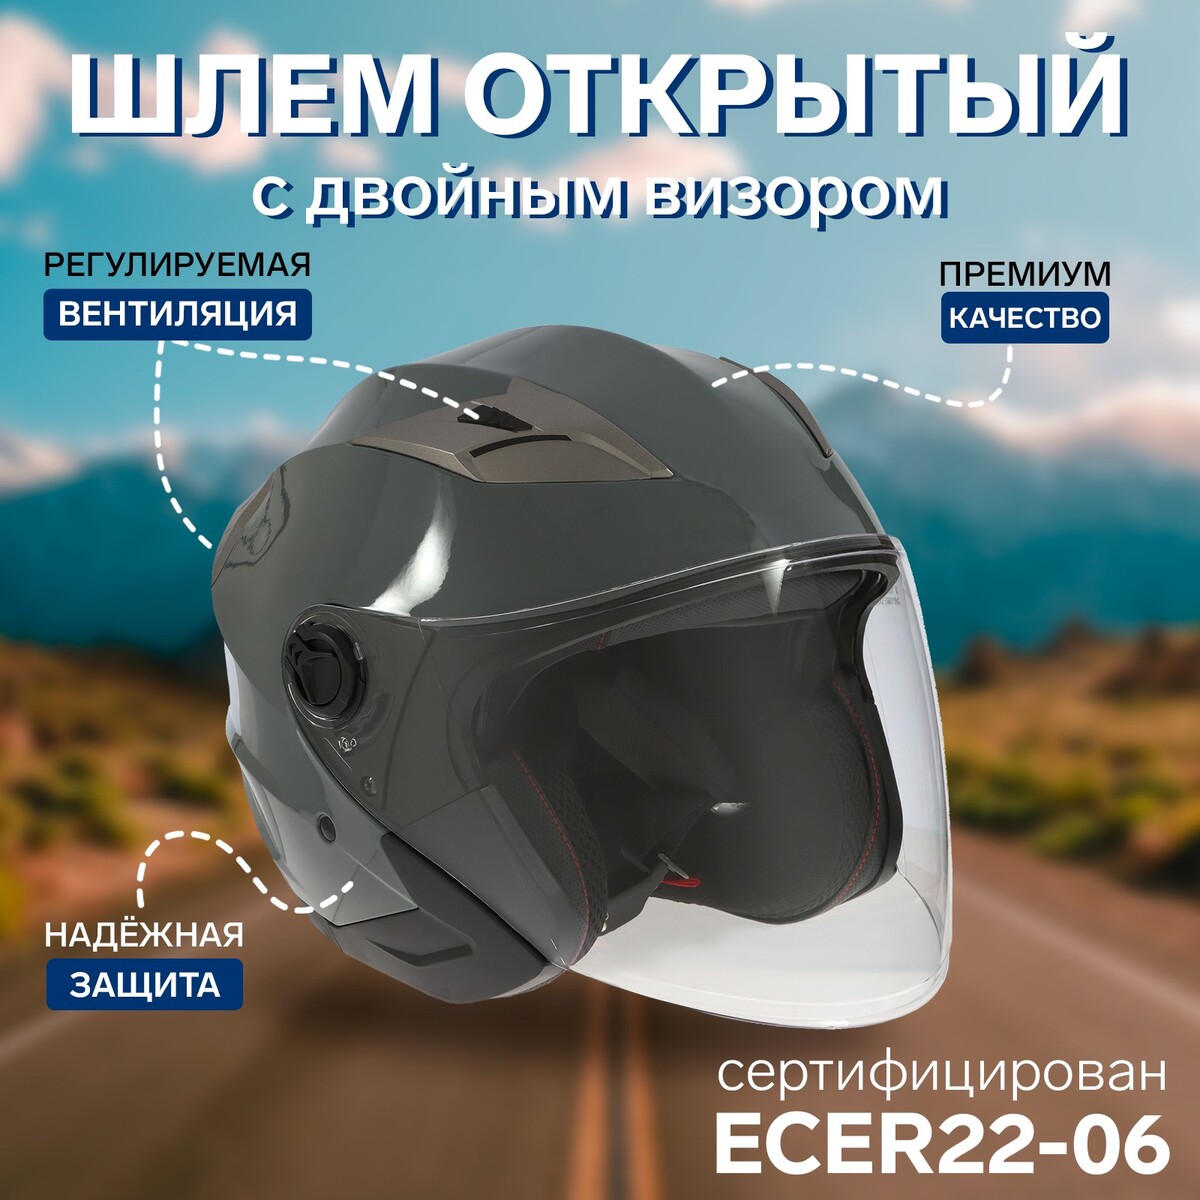 Шлем открытый с двумя визорами, размер l (59-60), модель - bld-708e, серый глянцевый шлем m l серый klonk 12013